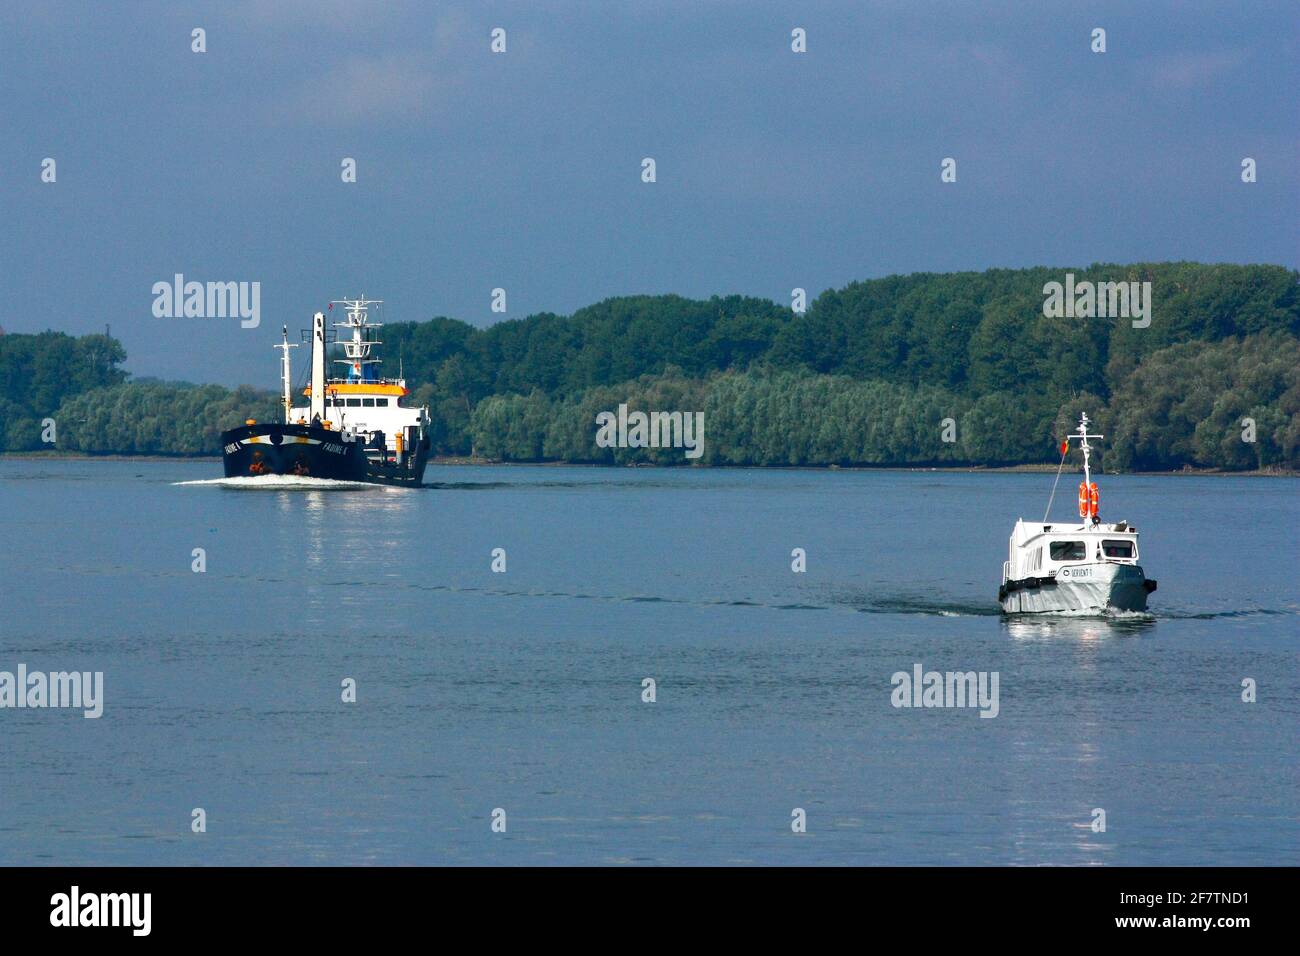 TULCEA, RUMÄNIEN - 15. Sep 2011: Zwei Schiffe auf der donau in der Nähe des Dorfes mila 23 rumänien Stockfoto